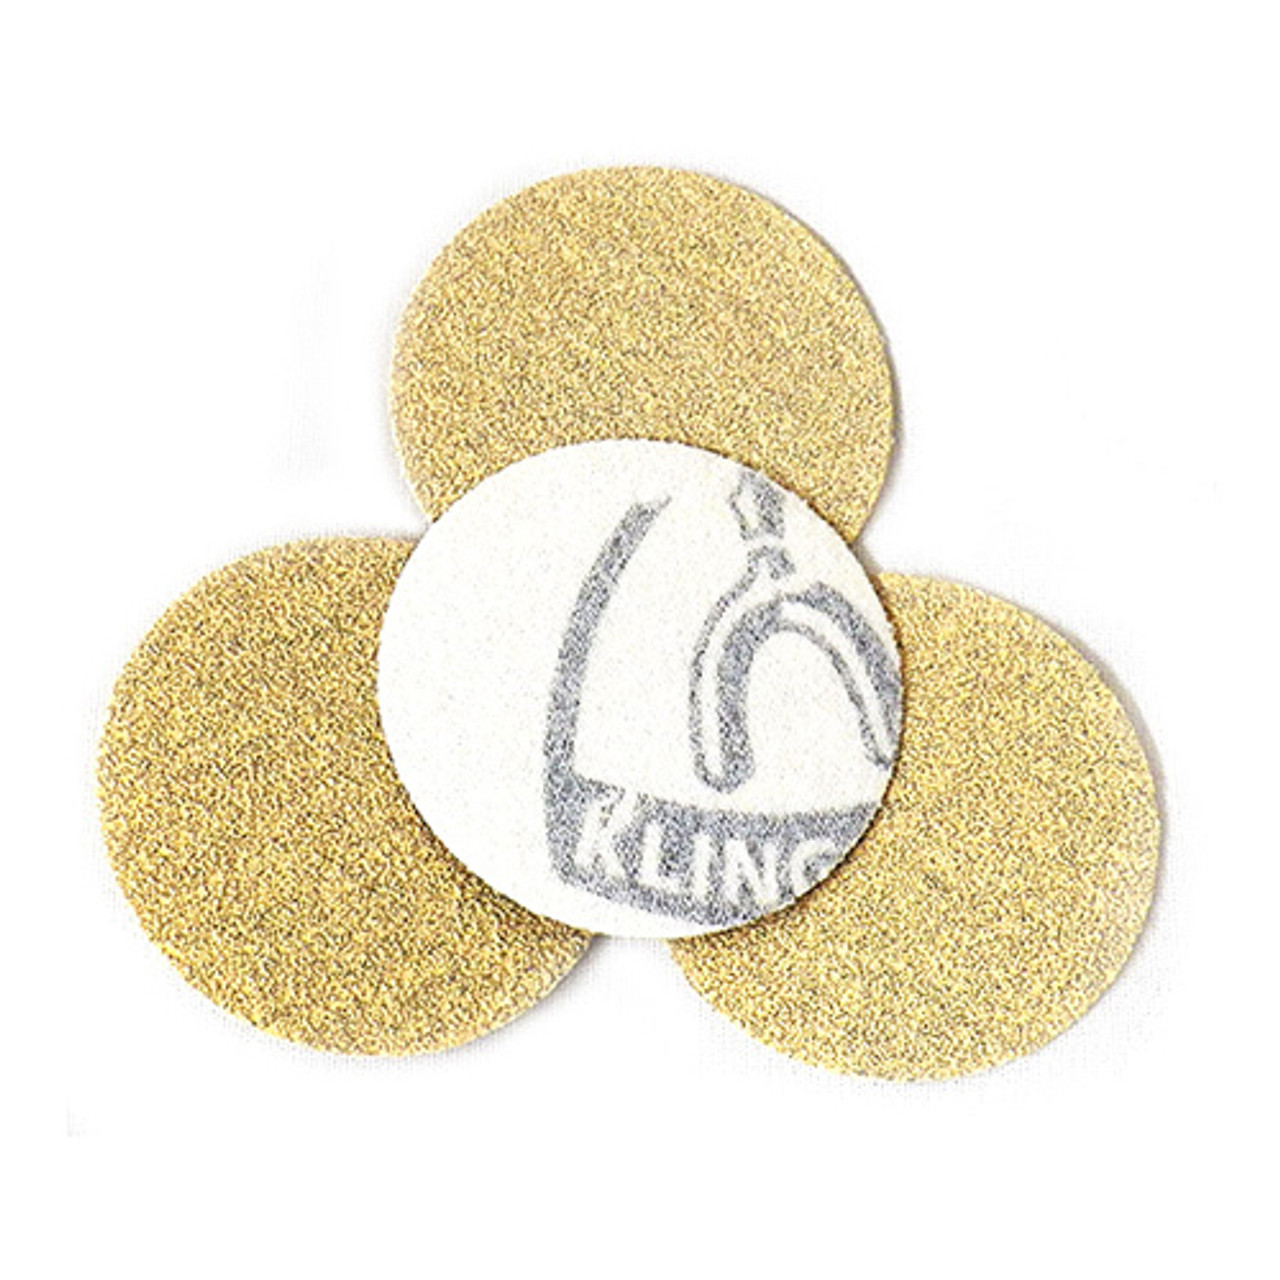 Klingspor Abrasives Stearated Aluminum Oxide, 2" Hook & Loop Discs, 120 Grit, 50pk